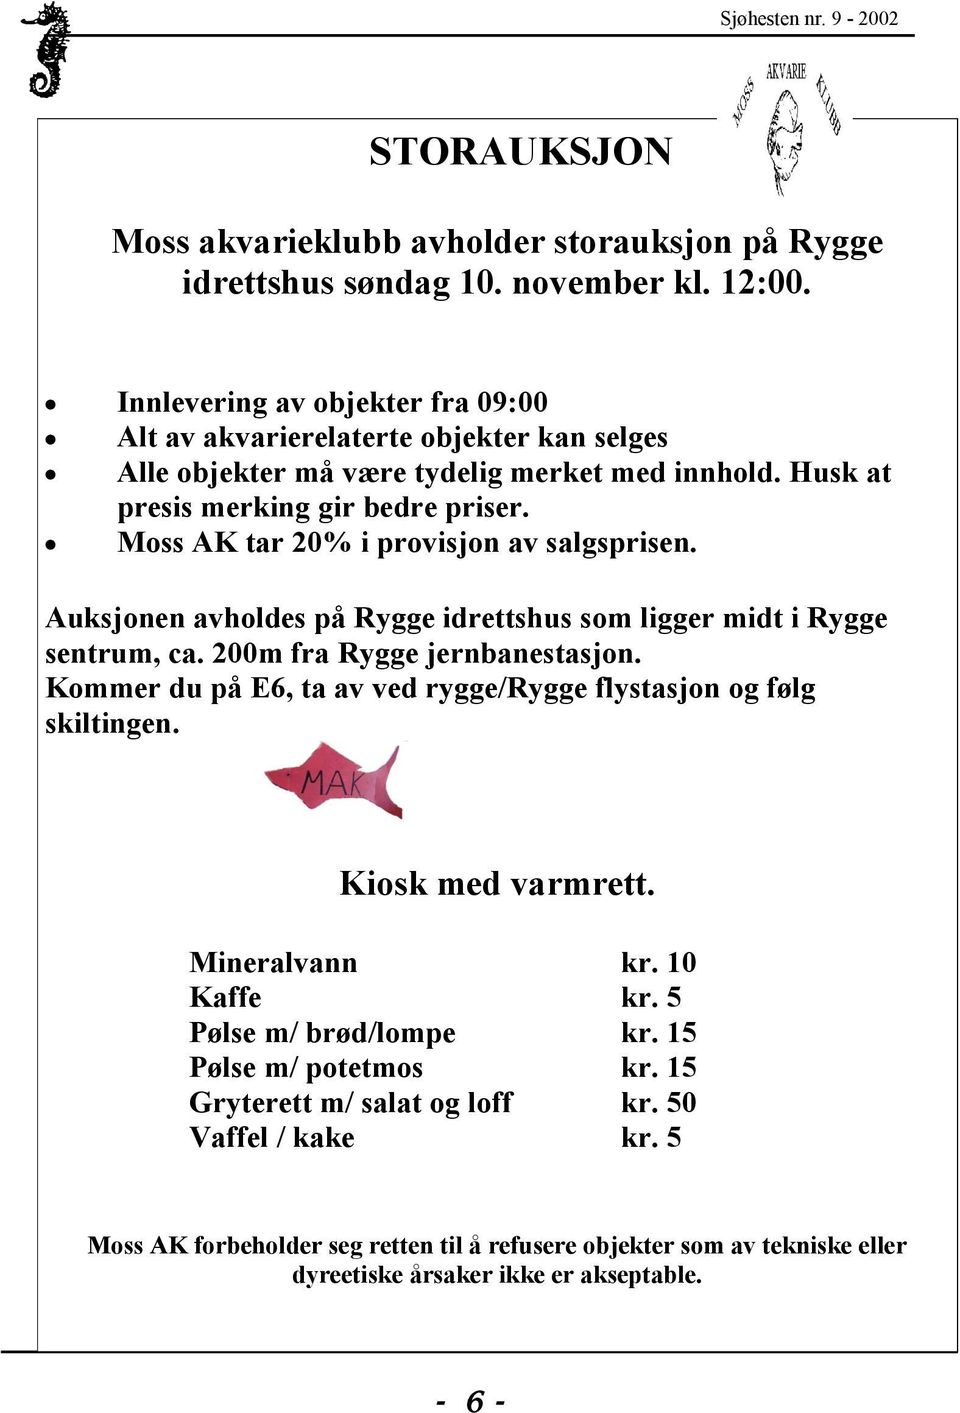 Moss AK tar 20% i provisjon av salgsprisen. Auksjonen avholdes på Rygge idrettshus som ligger midt i Rygge sentrum, ca. 200m fra Rygge jernbanestasjon.